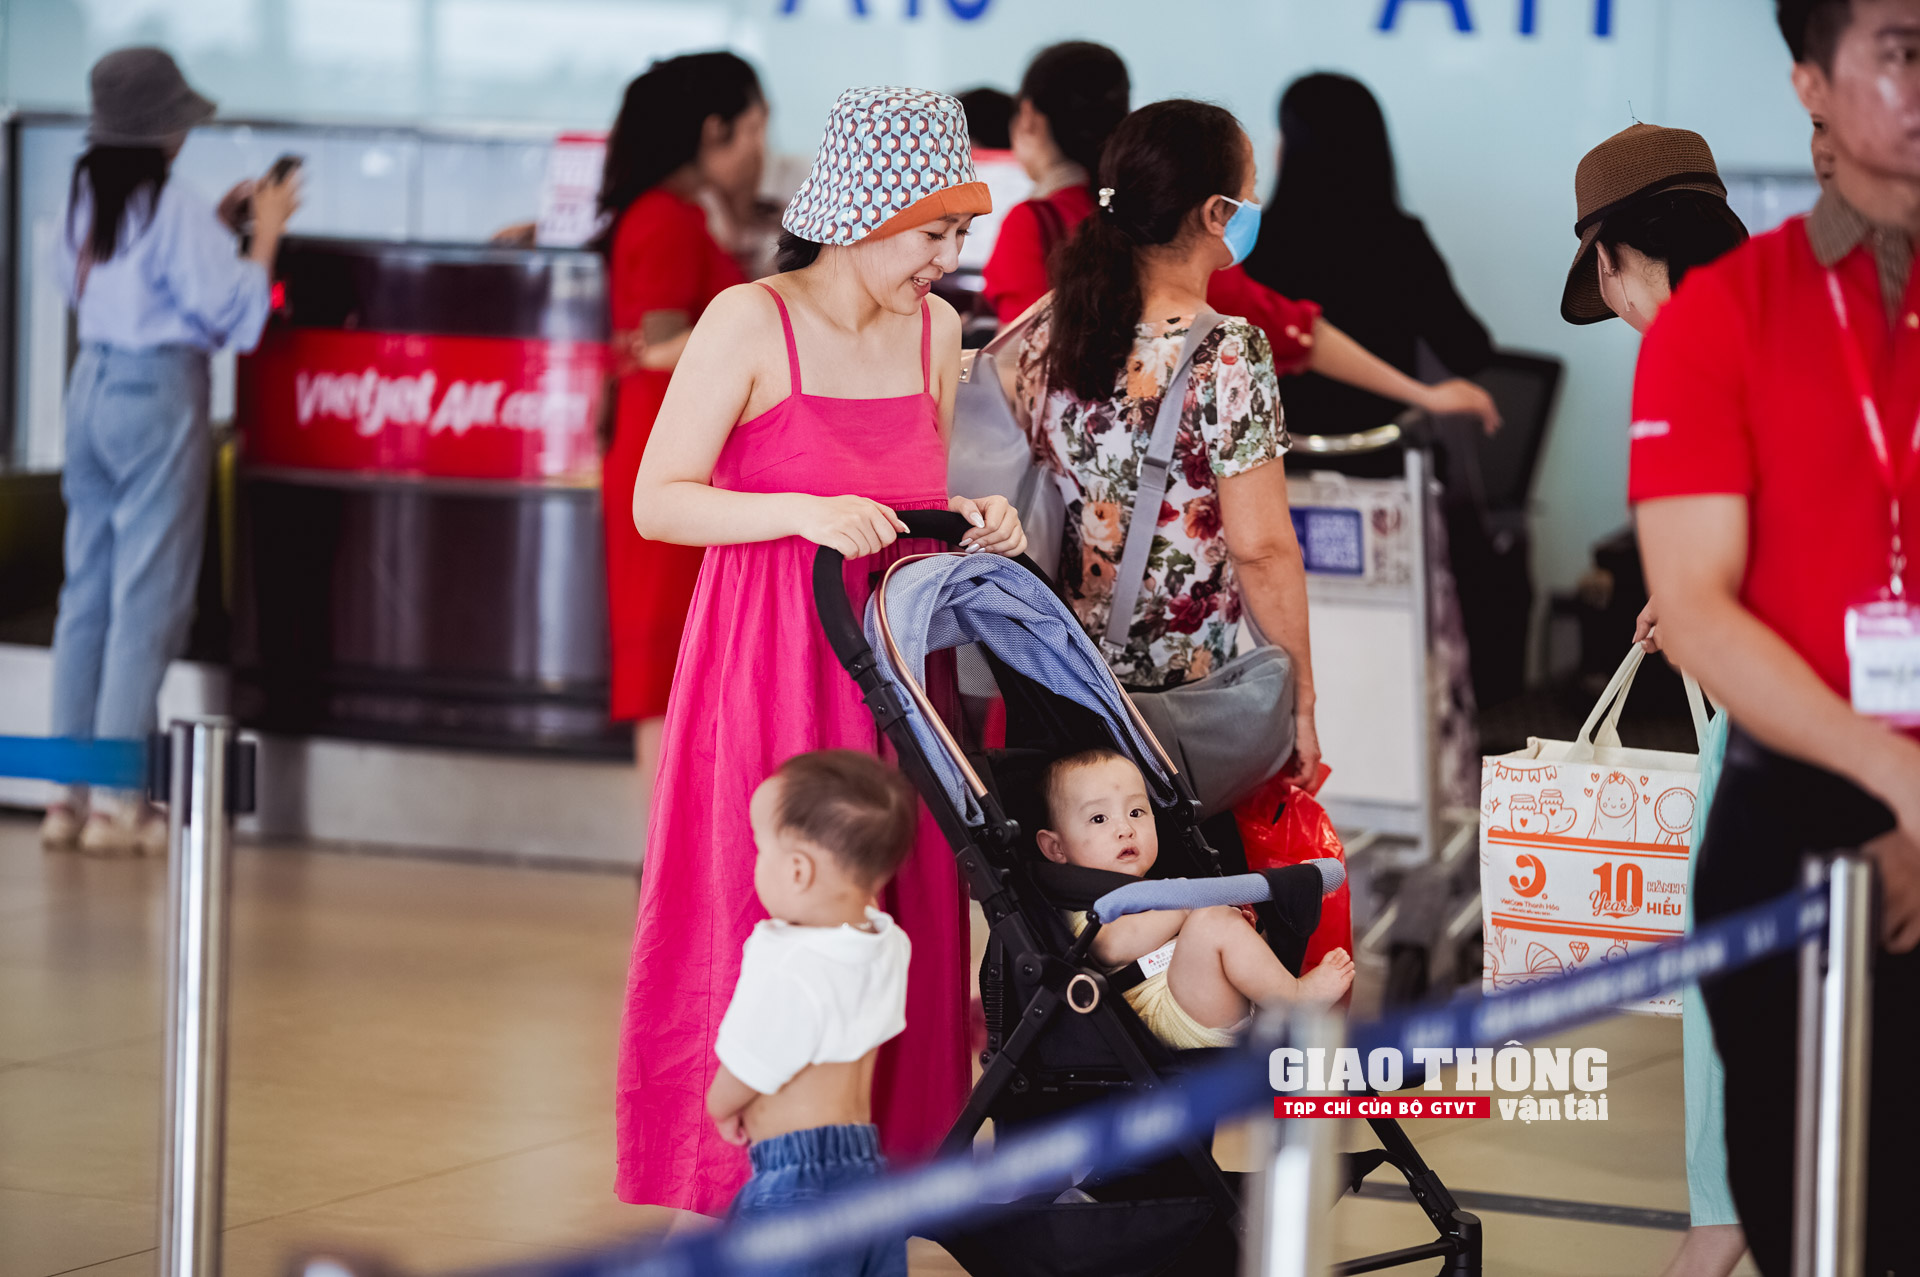 Cận cảnh ngày cao điểm nhất tại sân bay Nội Bài dịp nghỉ Lễ 30/4 - 1/5- Ảnh 27.